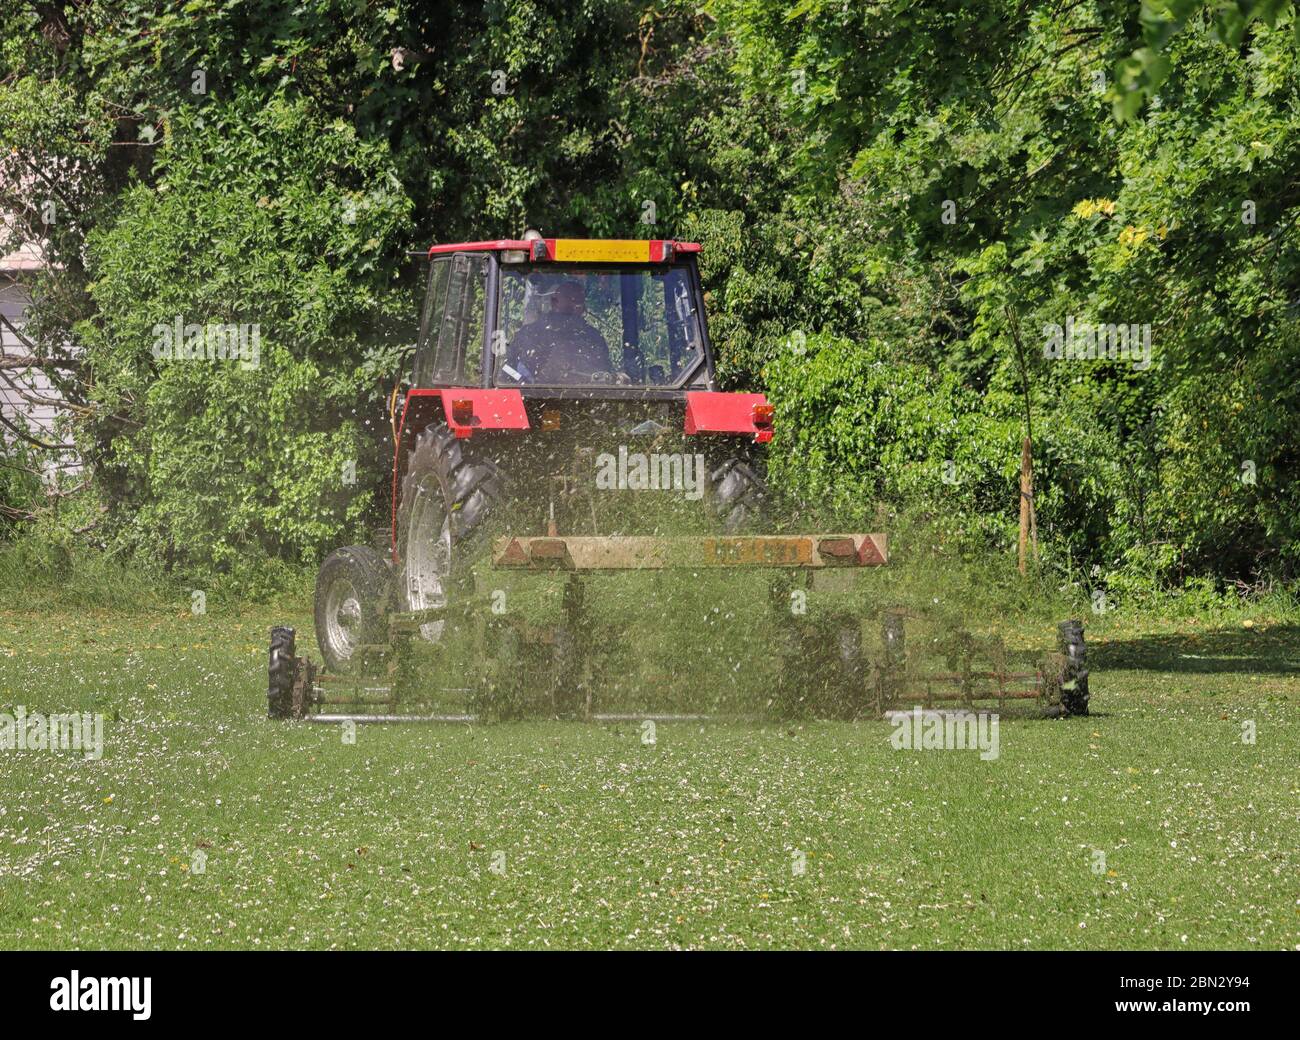 Traktor mit Anhänger Rasenmähen in einem öffentlichen Park in England Stockfoto